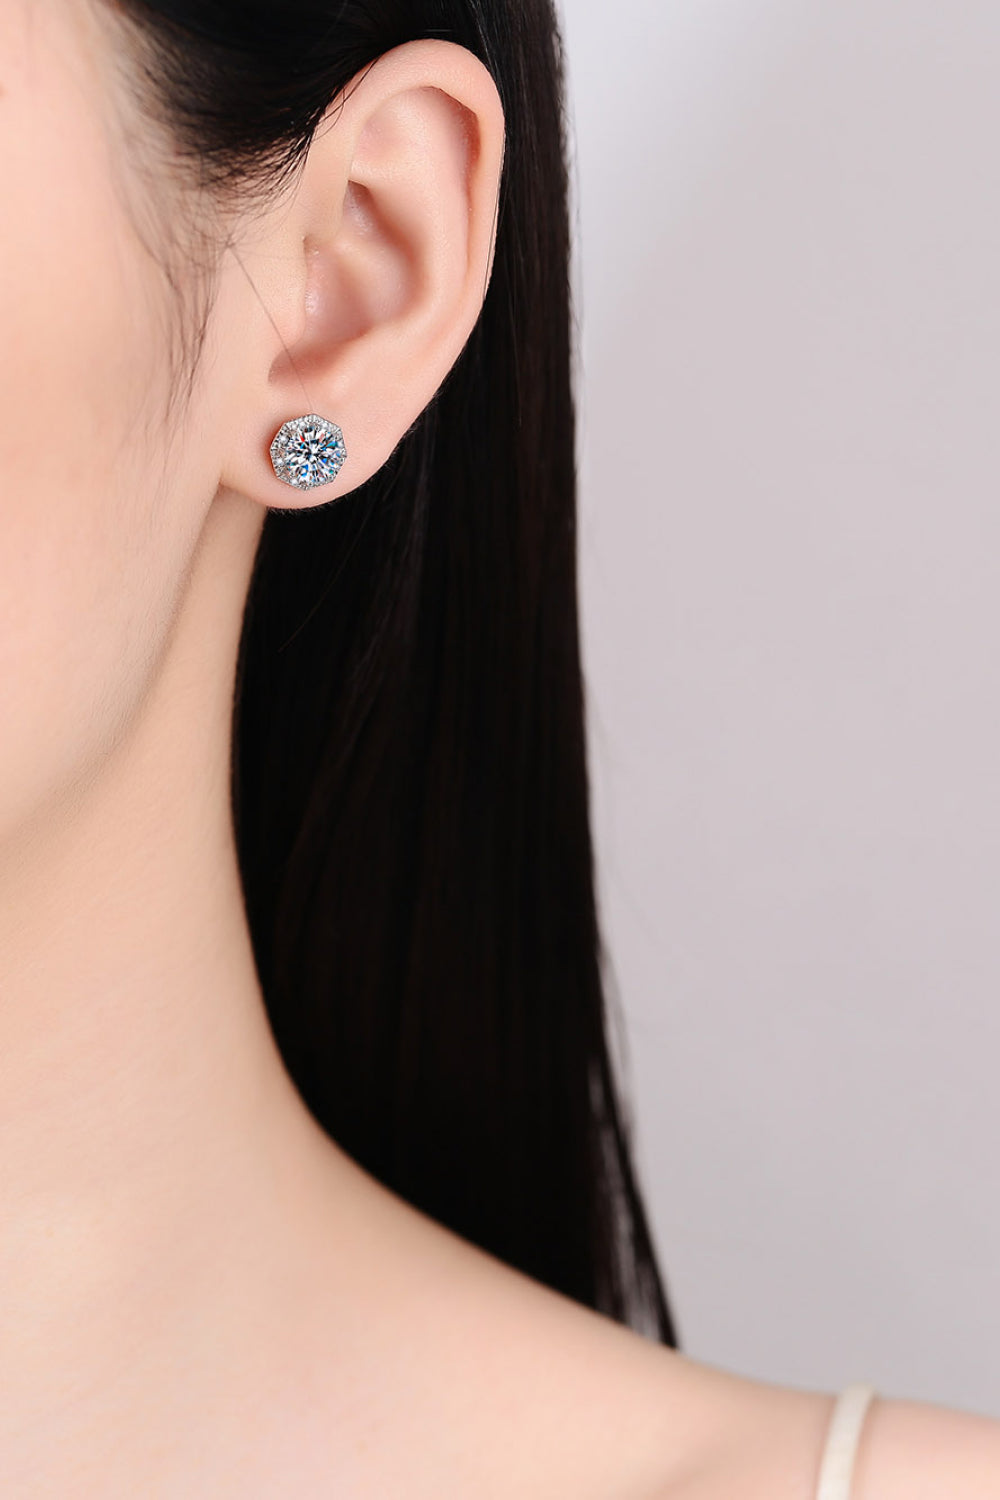 1 Carat Moissanite Stud Earrings